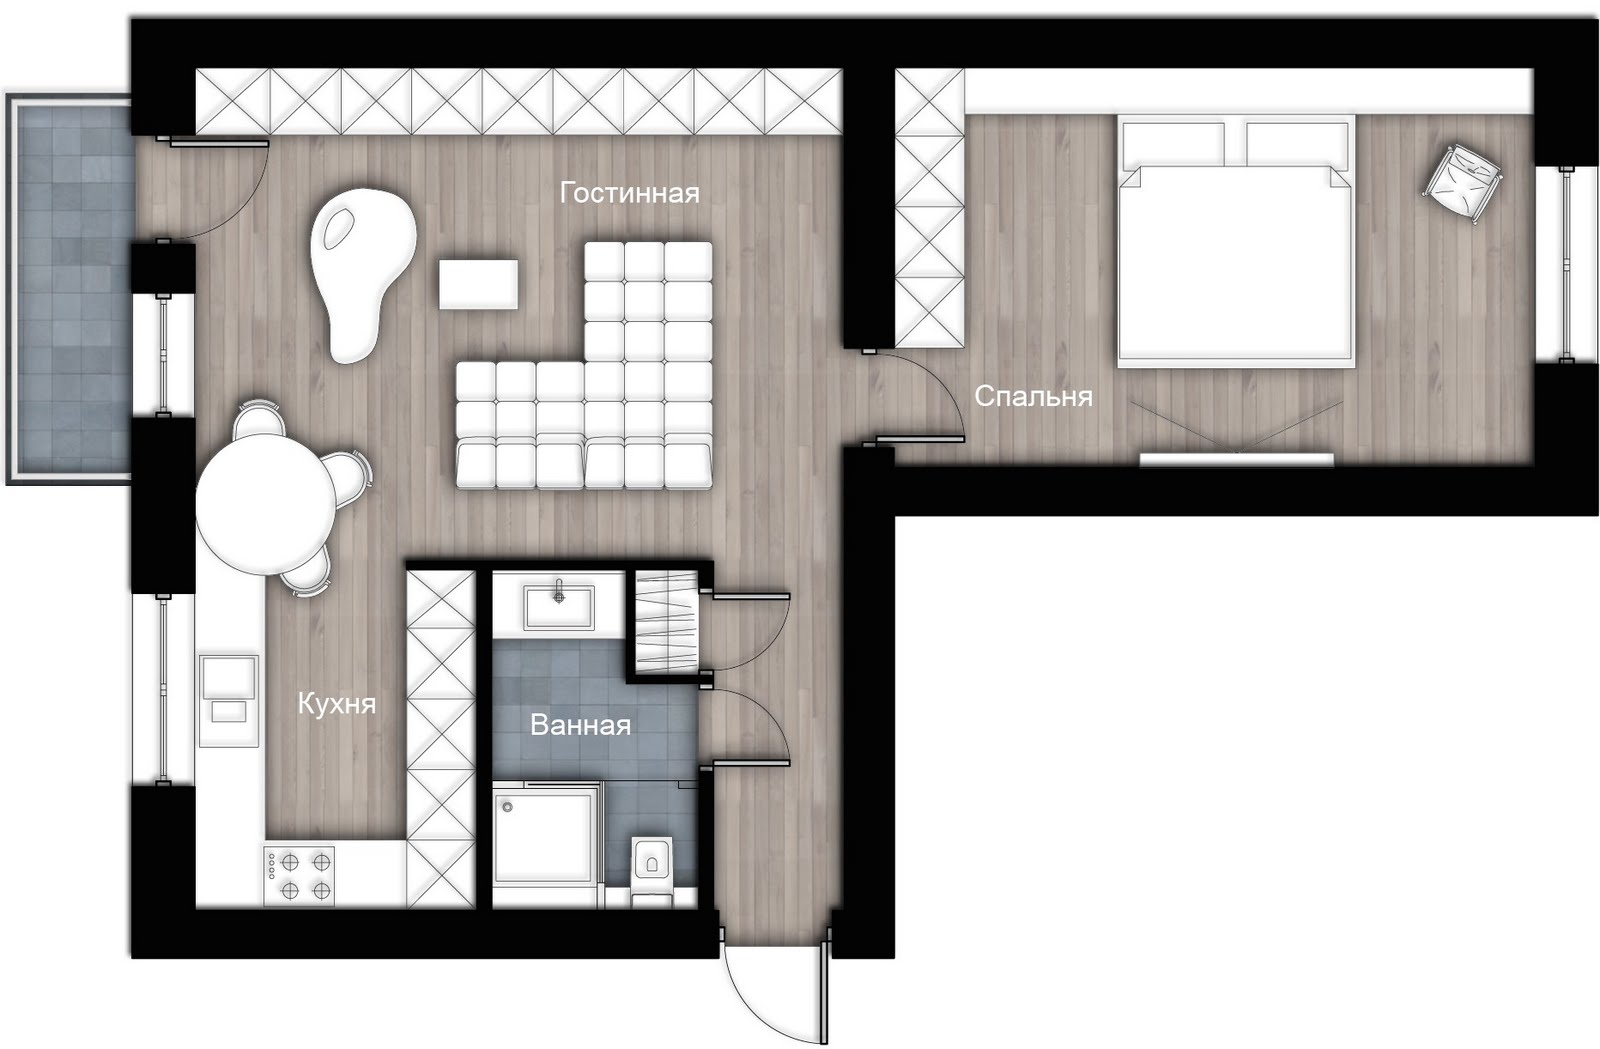 Продажа квартир в ЖК Da Vinci 🏘 в Астане: продать, купить квартиру – объявления на Крыше